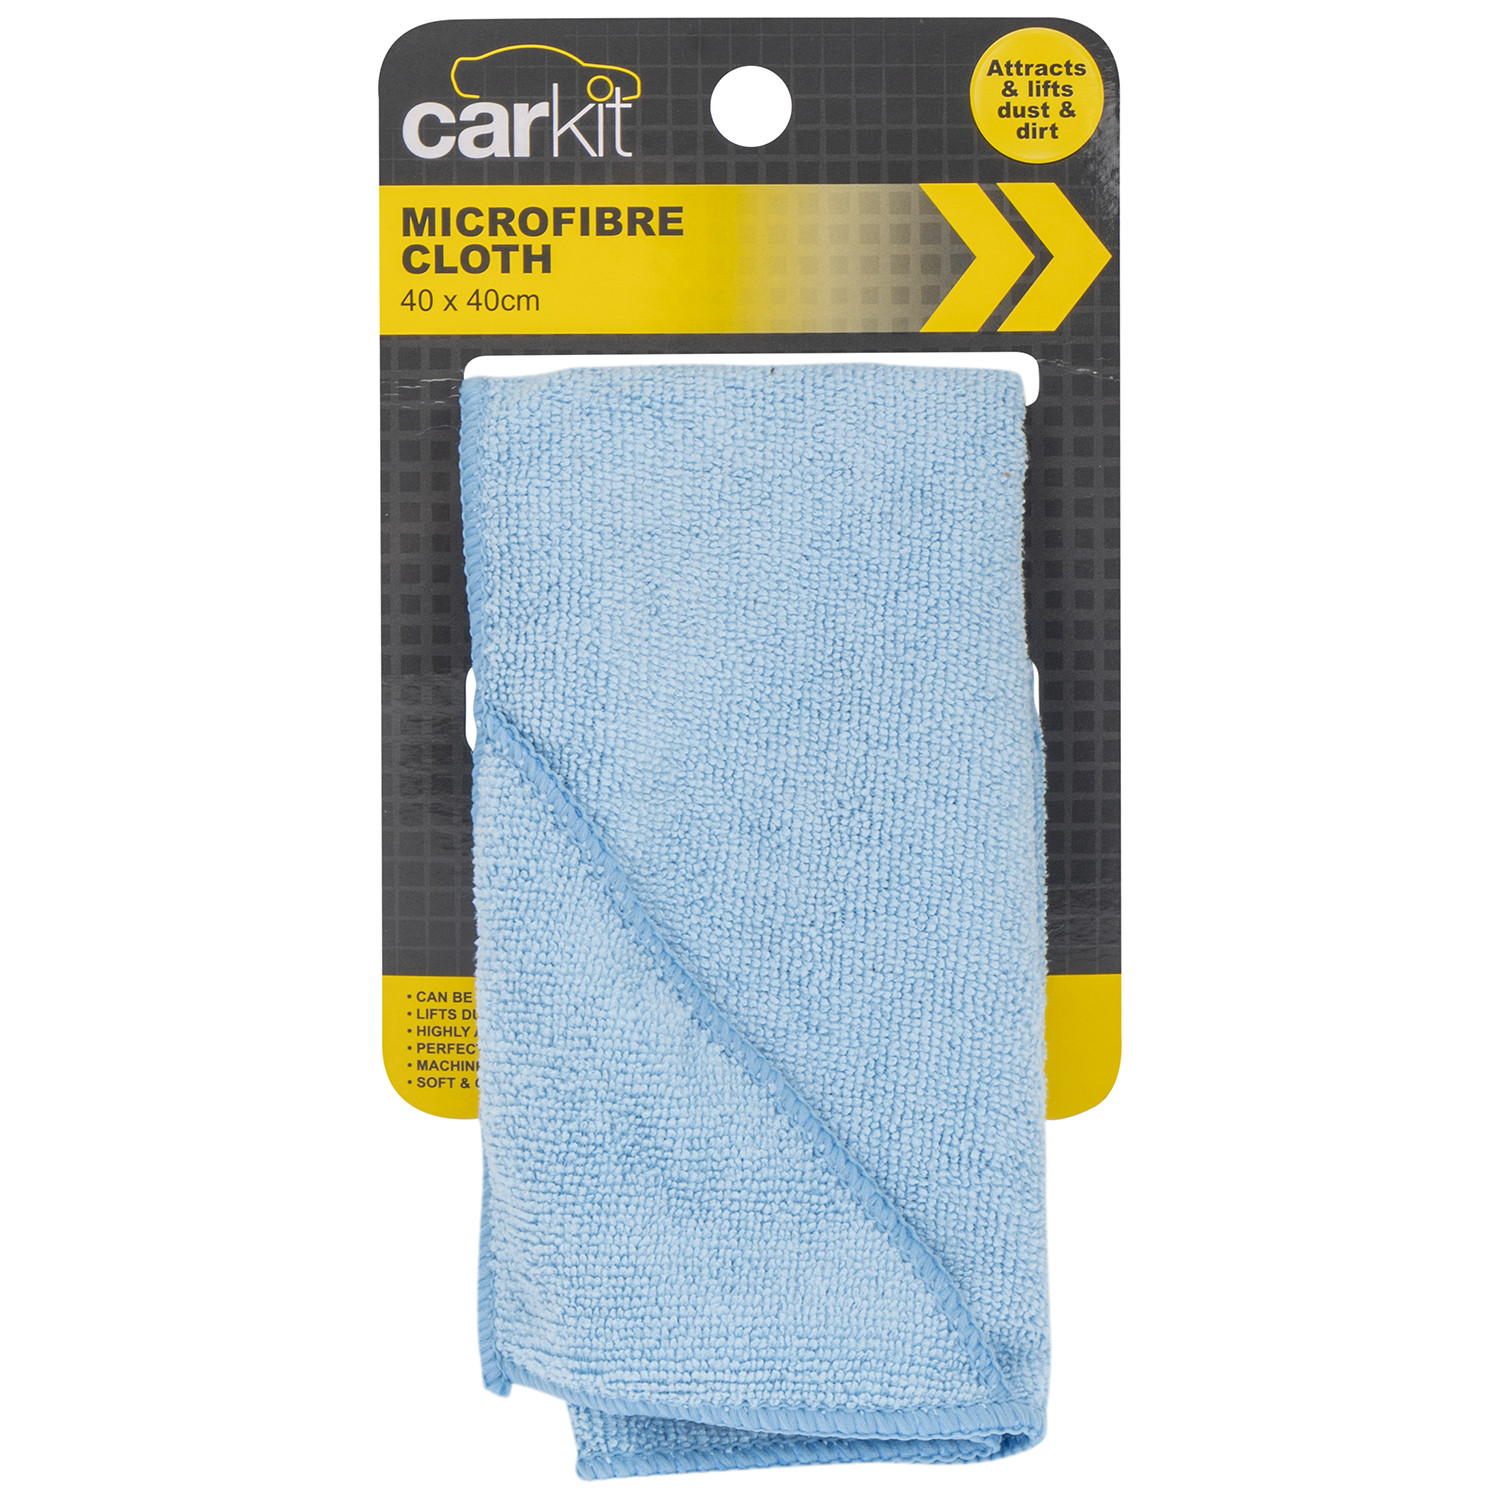 Carkit Microfibre Cloth Image 1